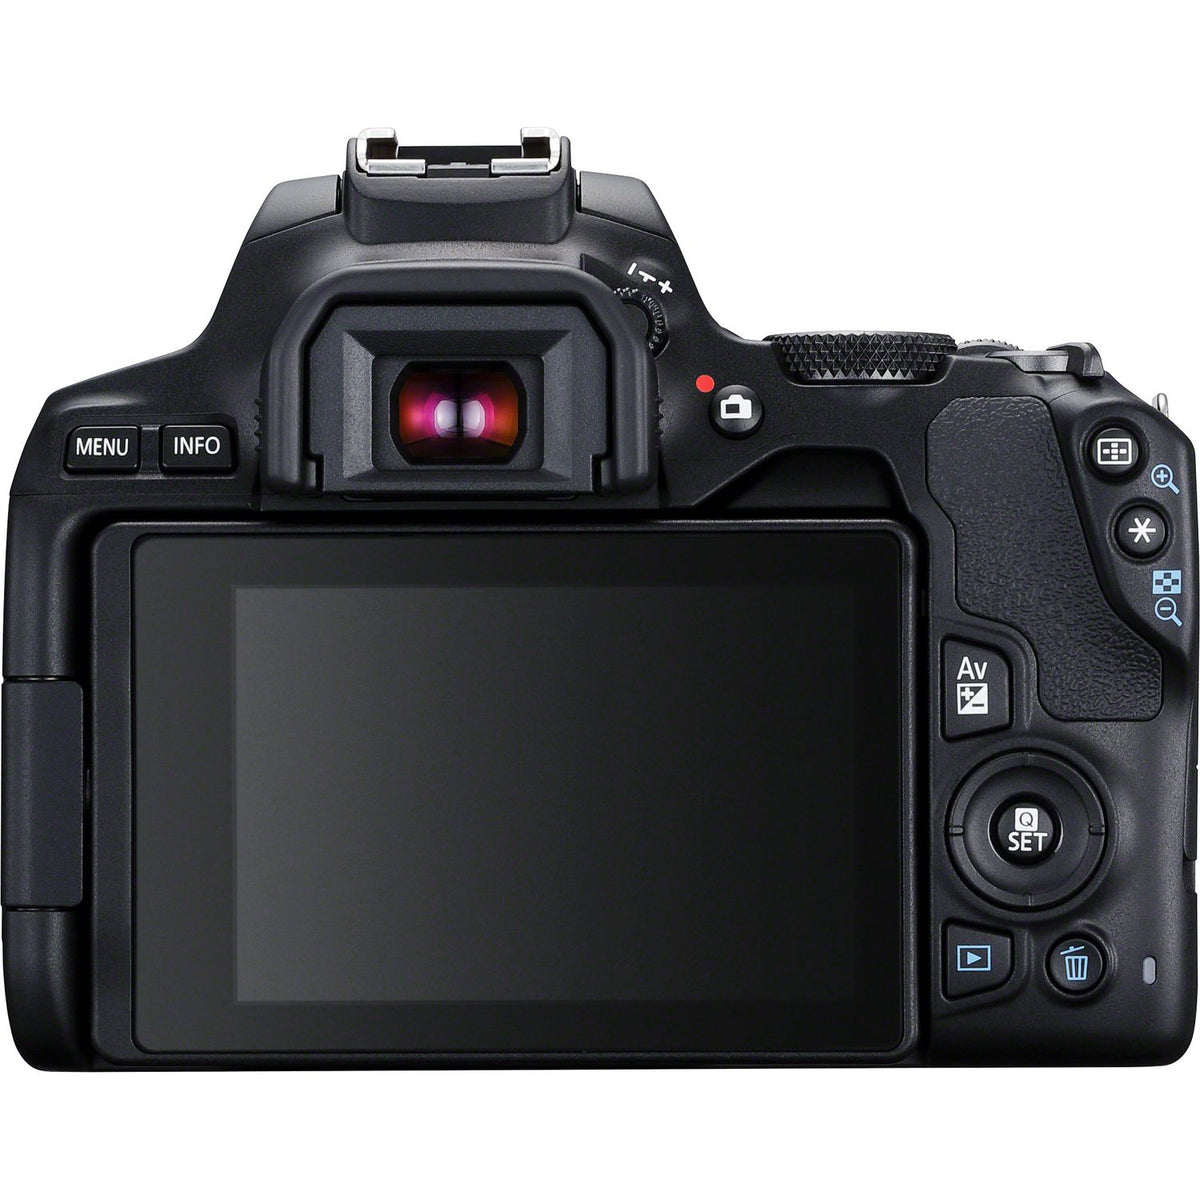 Canon EOS 250D Digital SLR Camera + 18-55mm IS STM Lens Kit